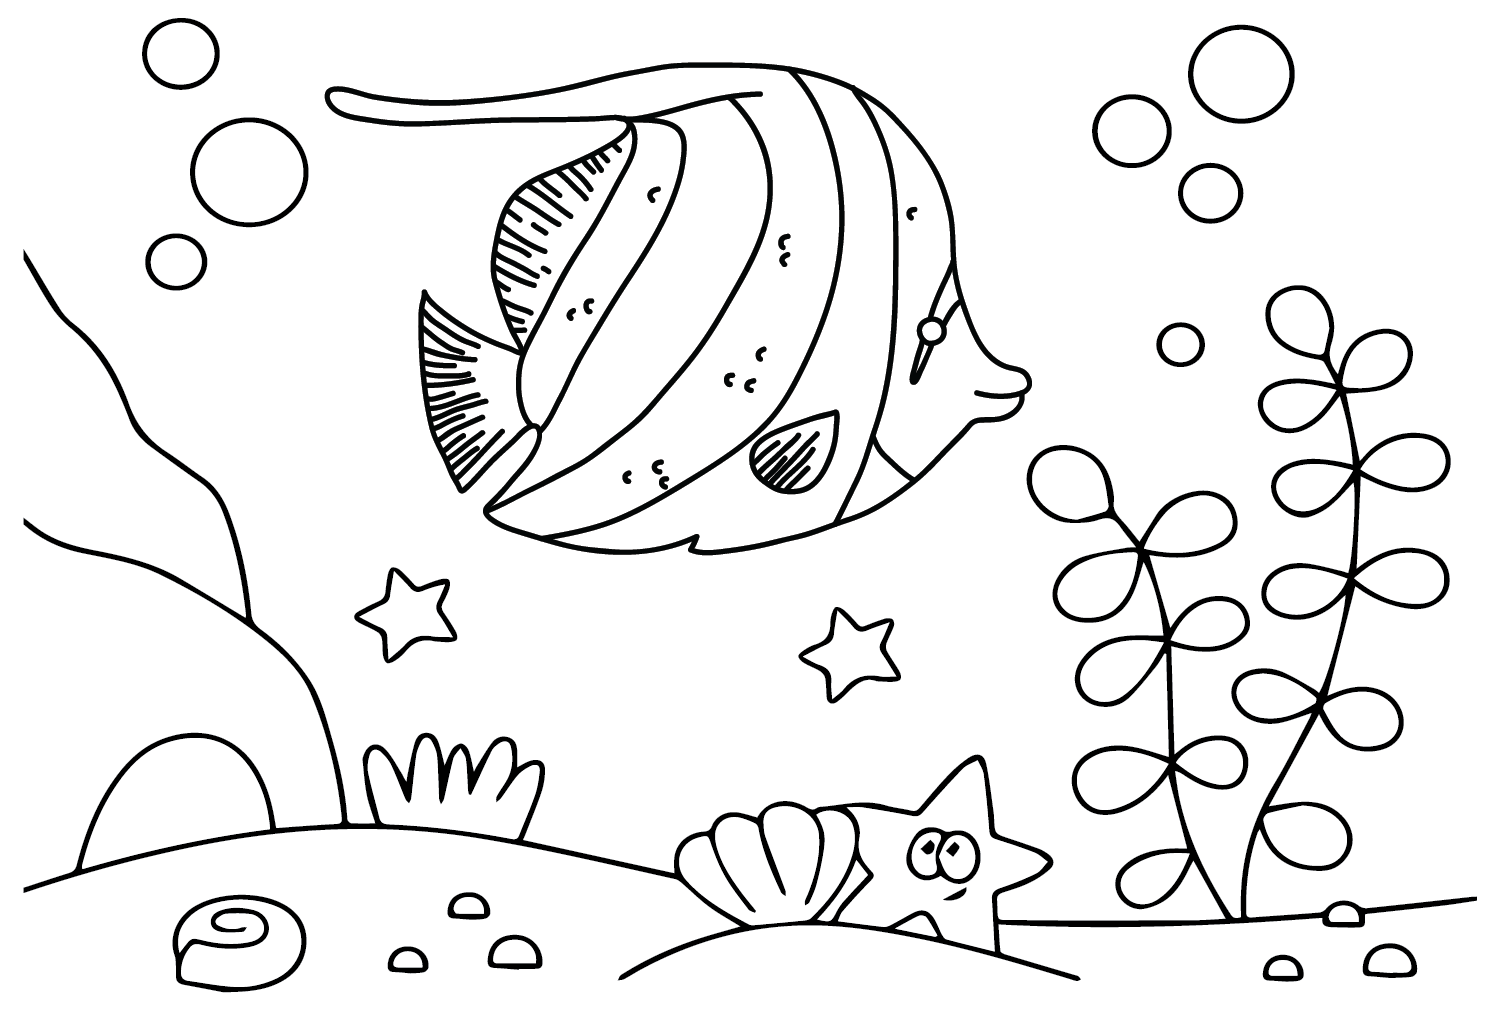 Pennant Coralfish 的 Pennant Coralfish 彩色表